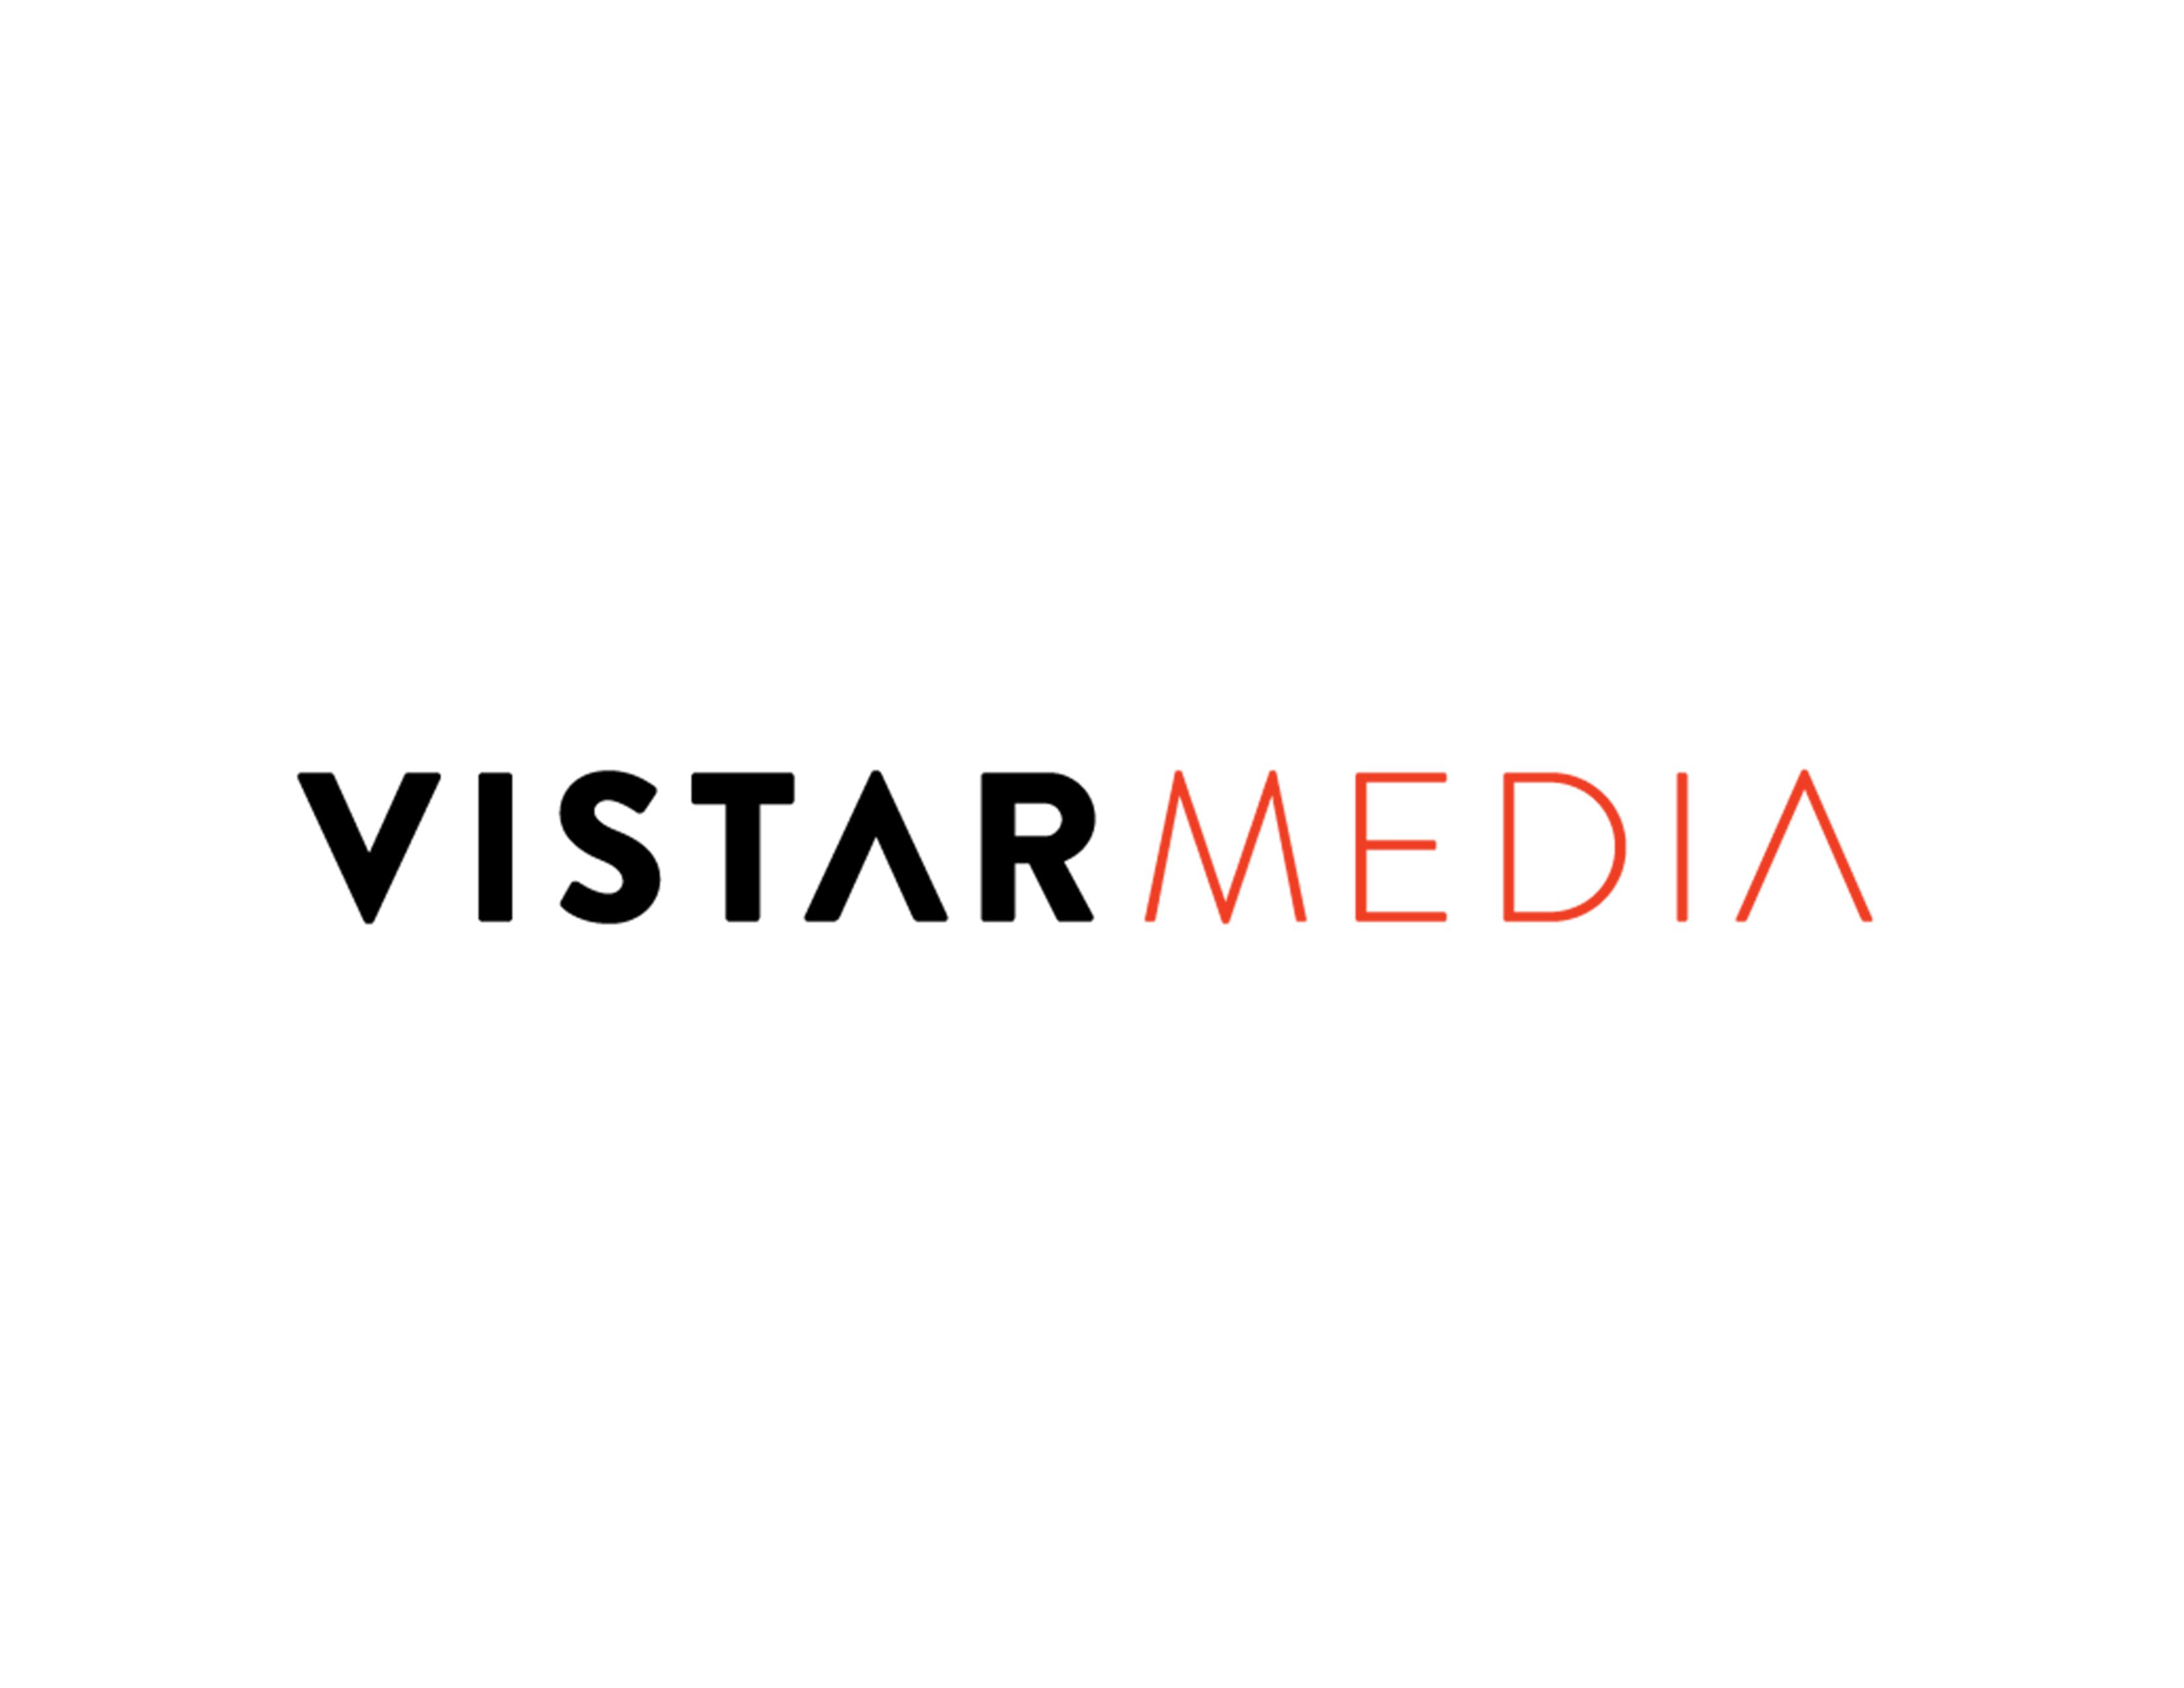 Vistar Media Logo